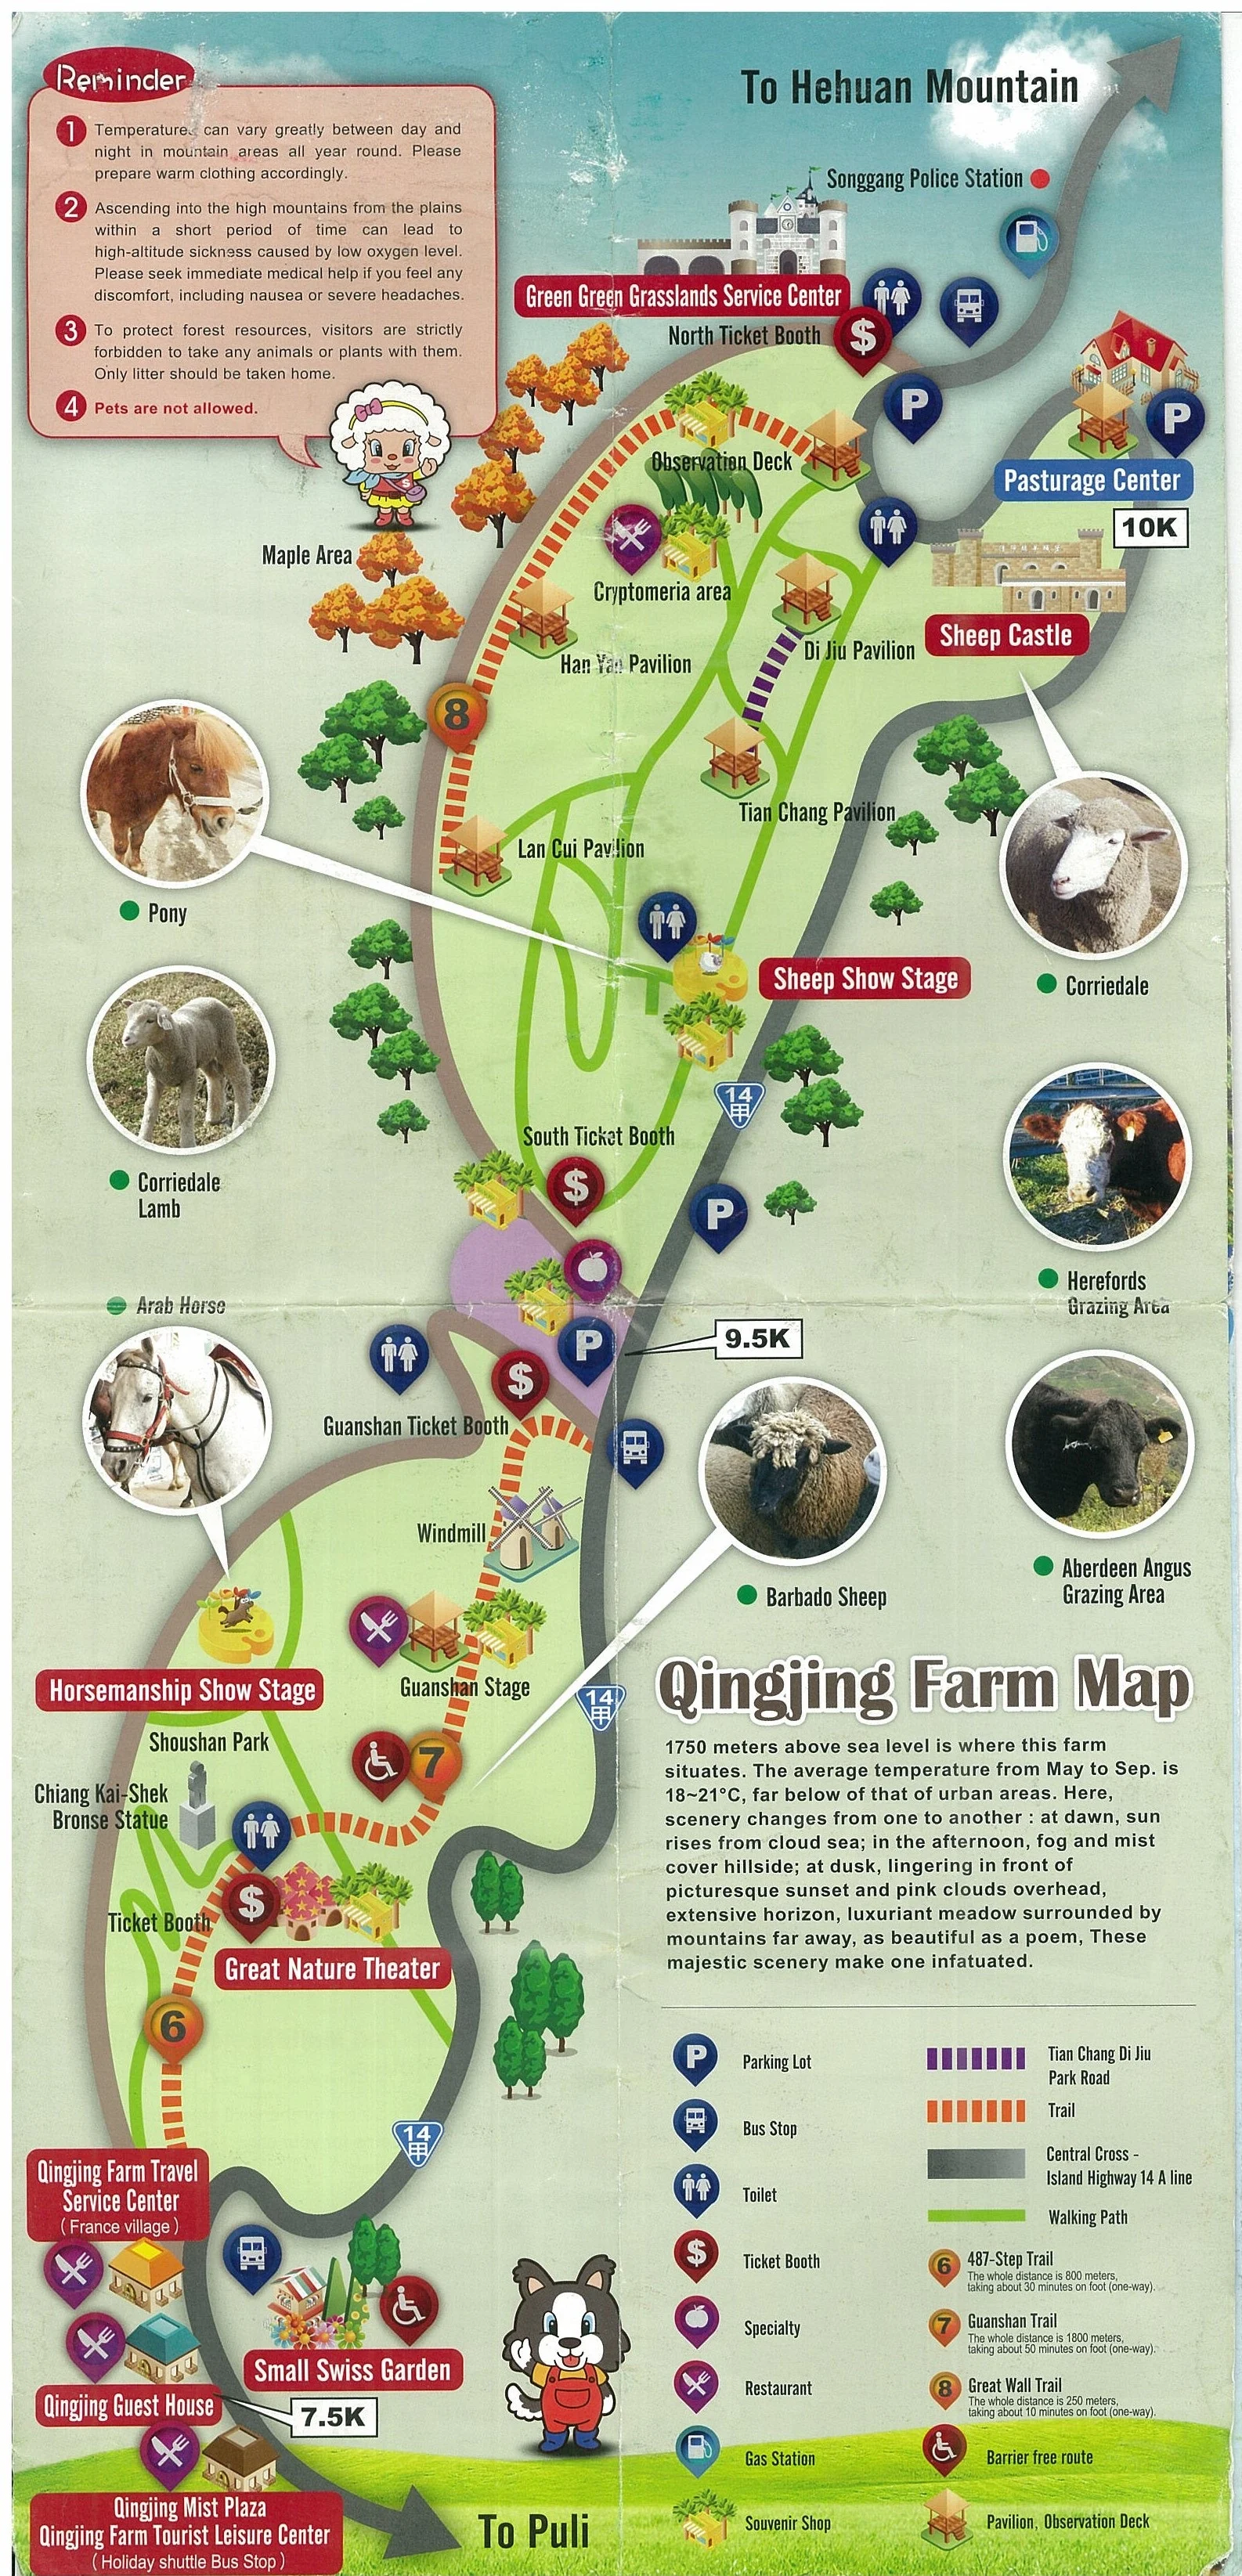 Cingjing Farm Map in English (Taiwan)